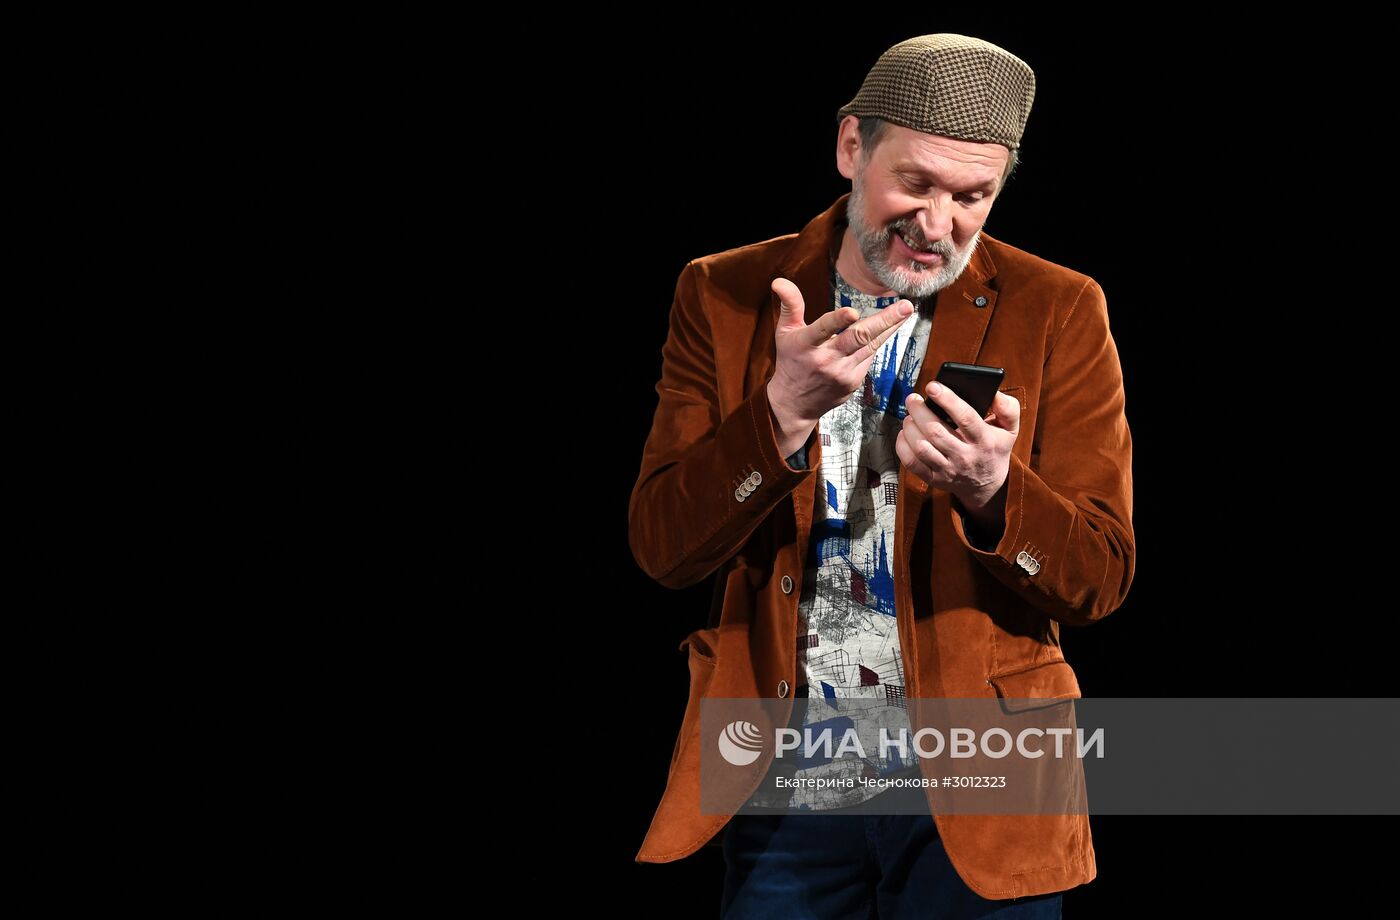 Прогон спектакля "Спасатель" в театре Антона Чехова